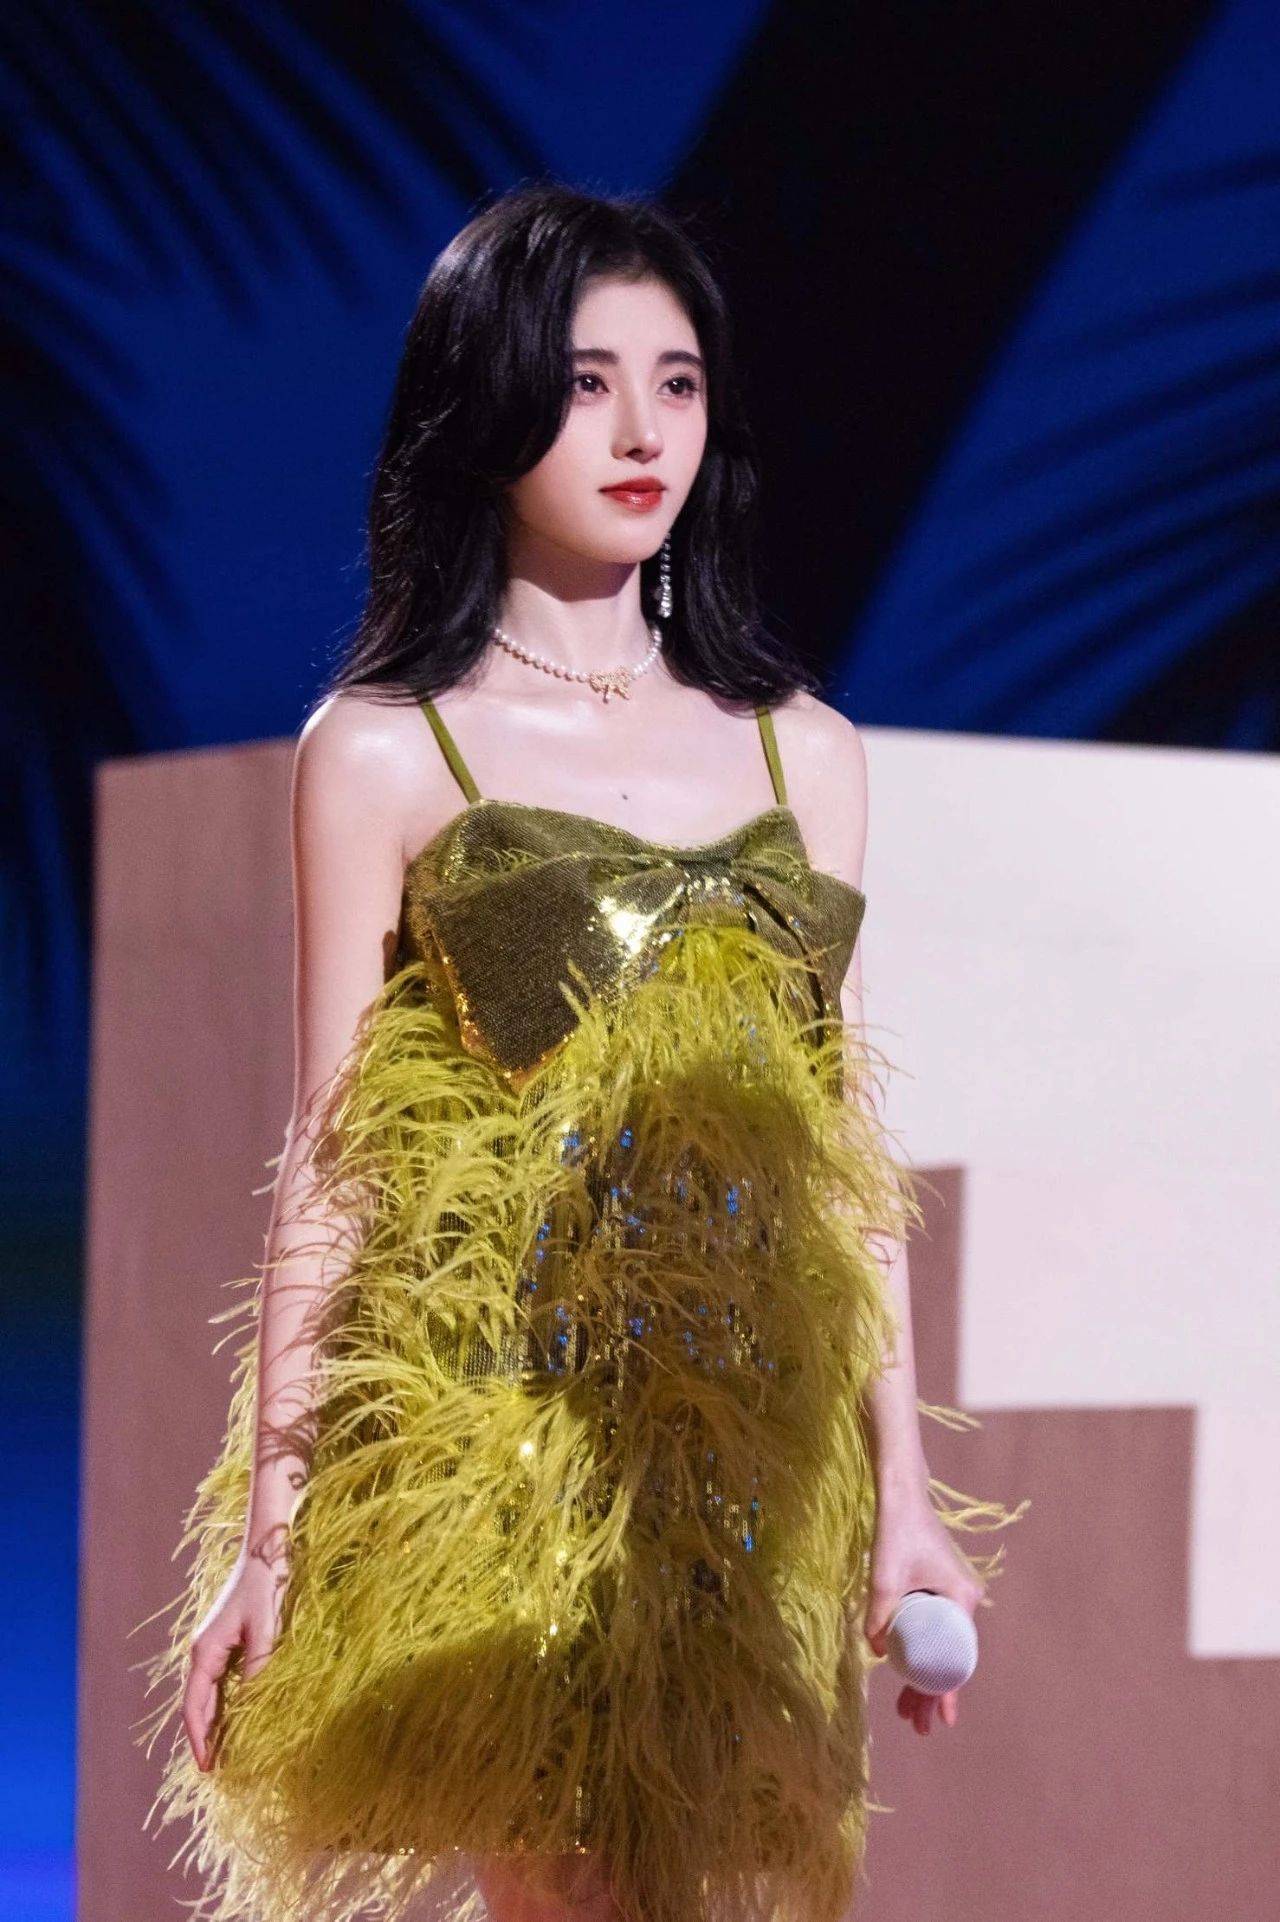 鞠婧祎壁纸:一身绿色时尚裙,仿佛是从丛林中走出来的仙女